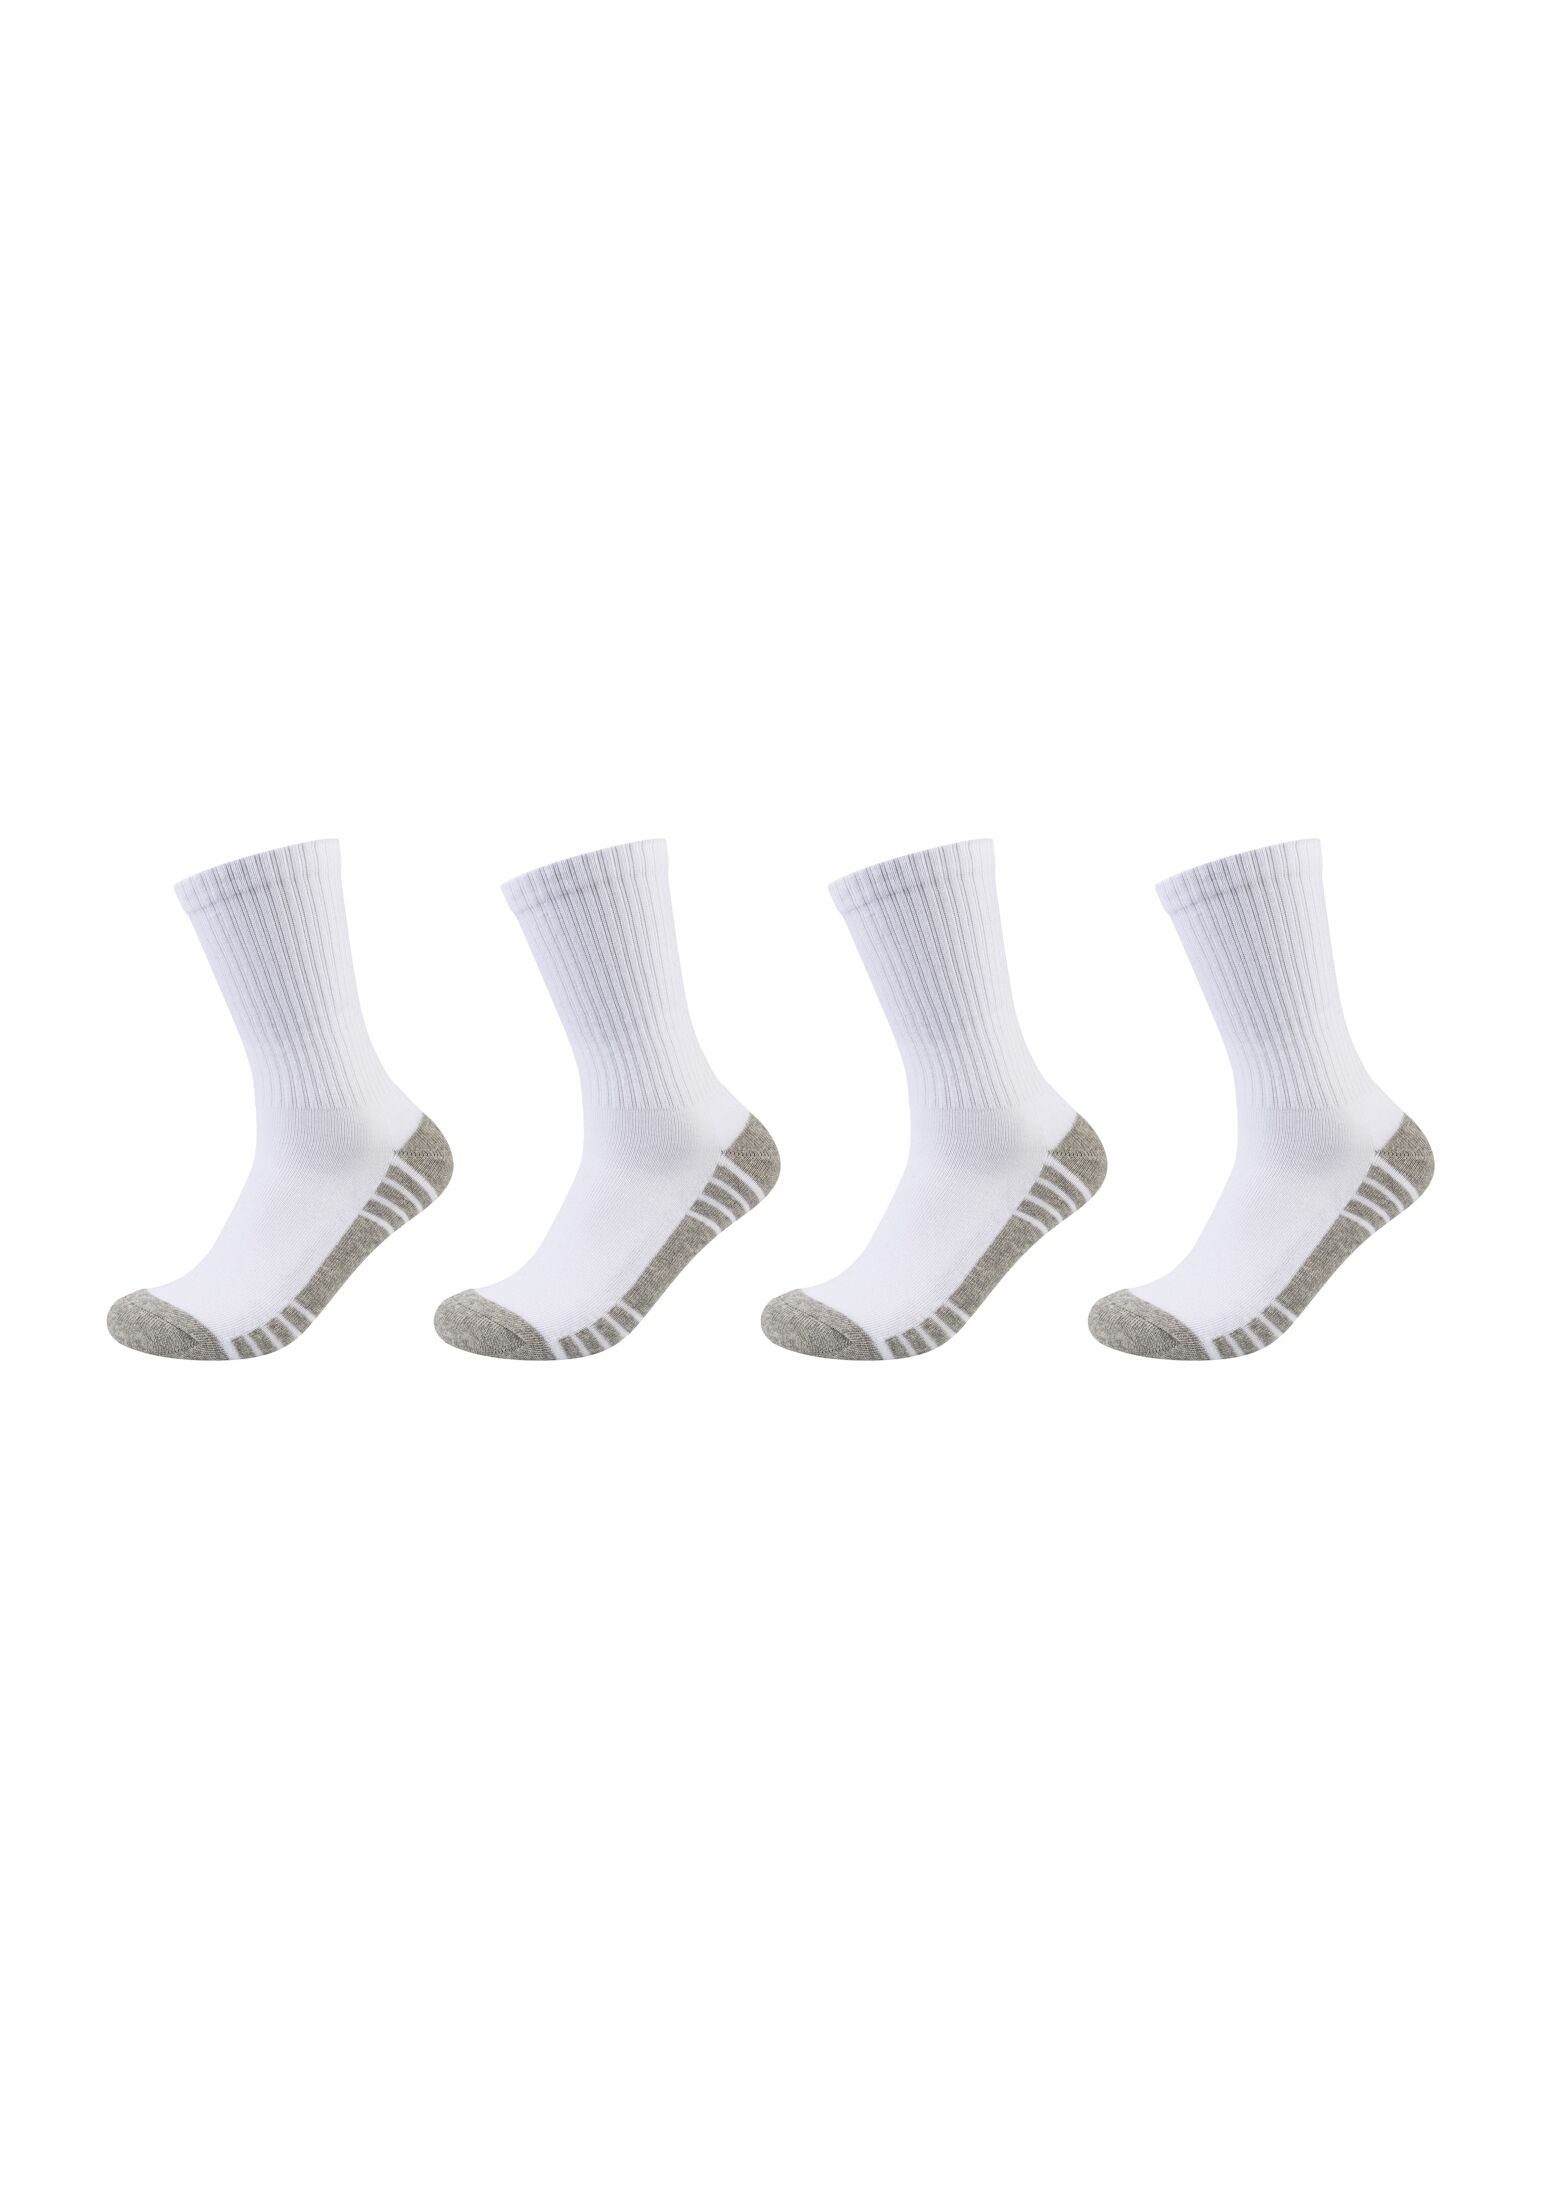 Skechers Socken white Pack 4er Tennissocken mix